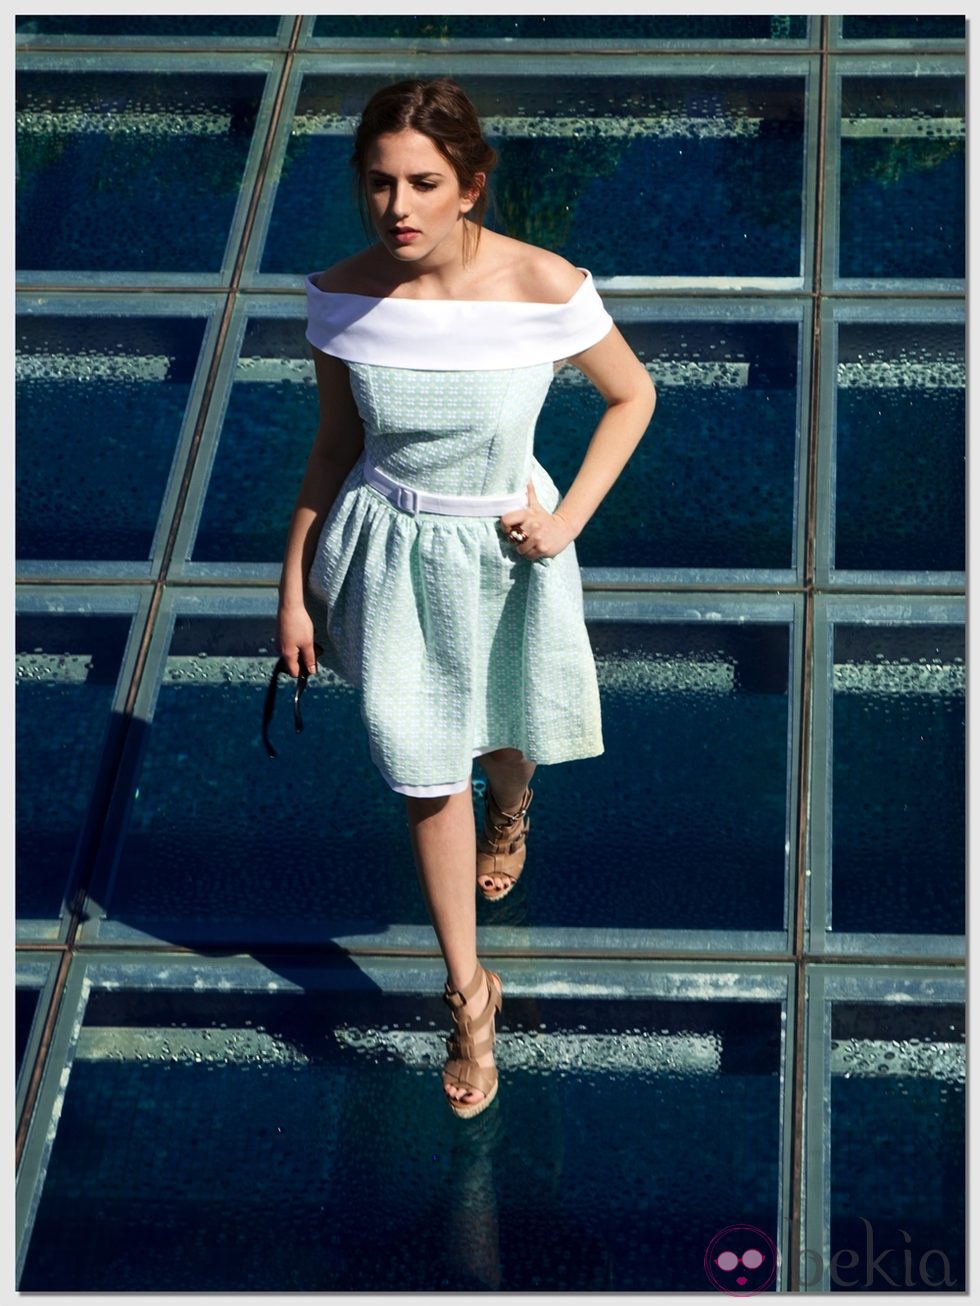 Marina Salas actriz de 'El barco' con un vestido azul